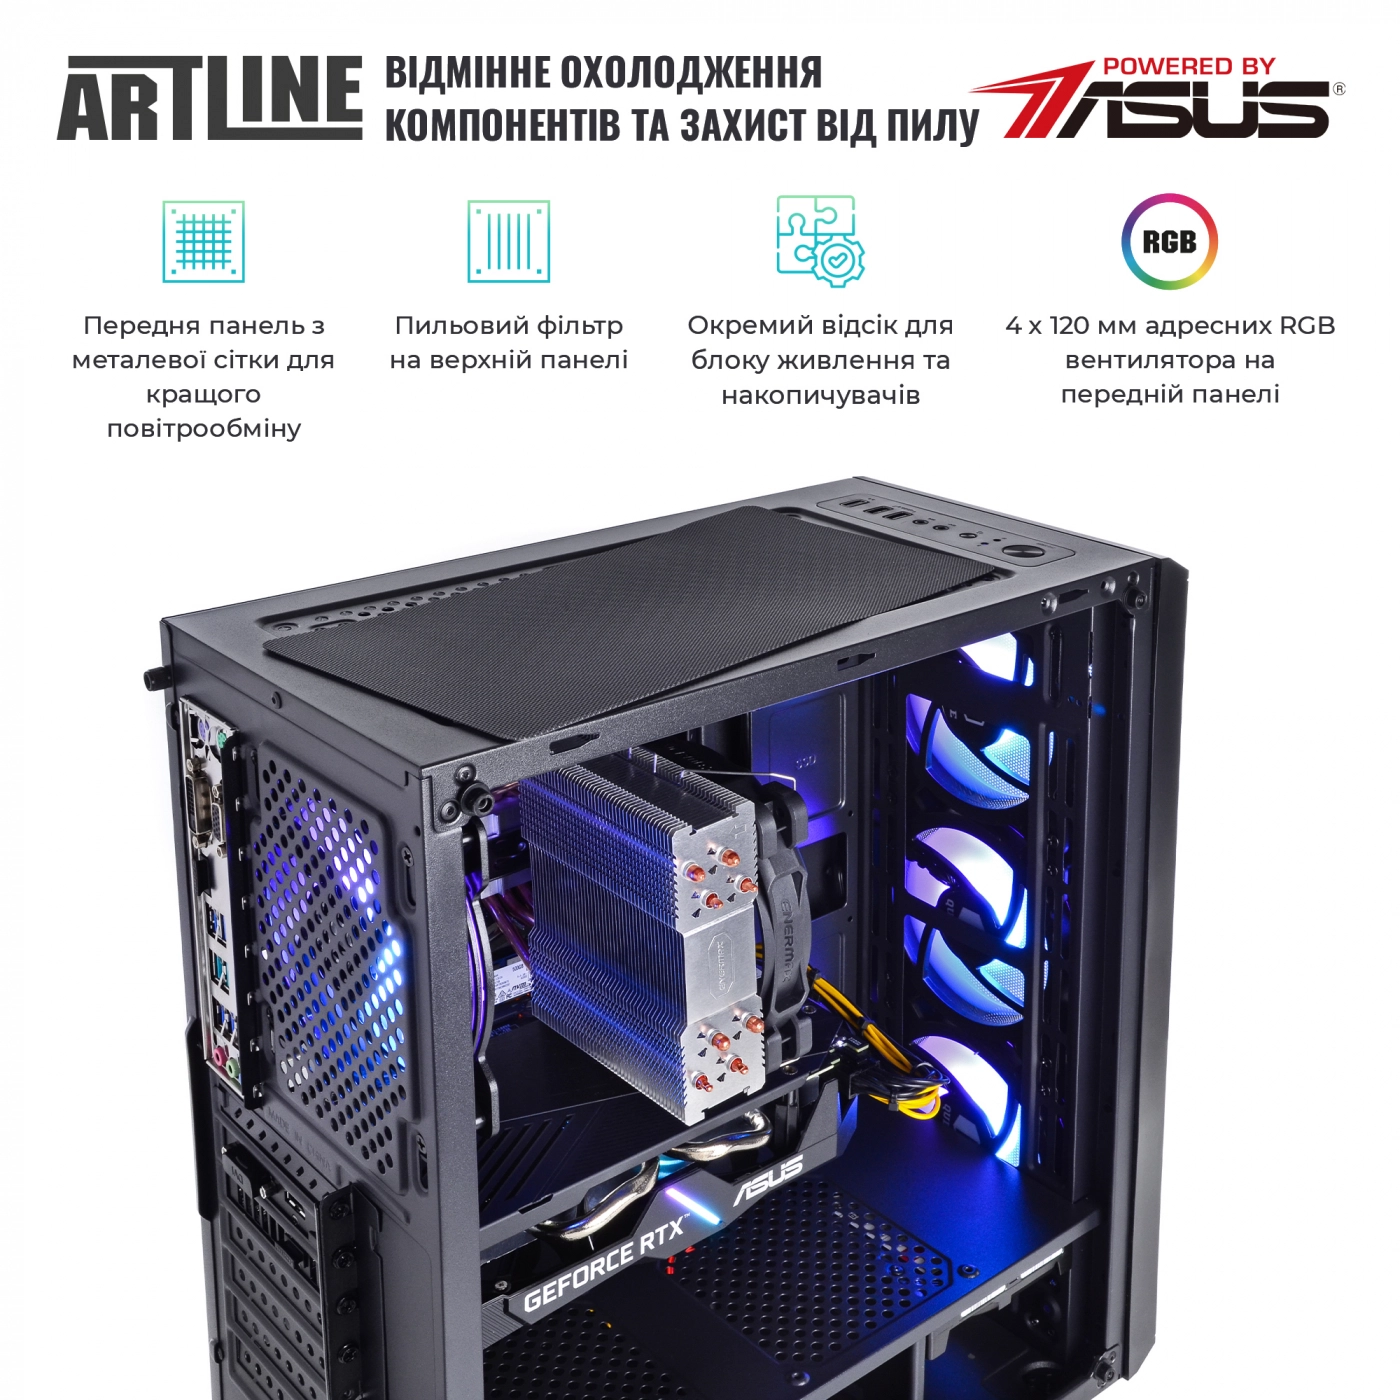 Купить Компьютер ARTLINE Gaming X73v31 - фото 3